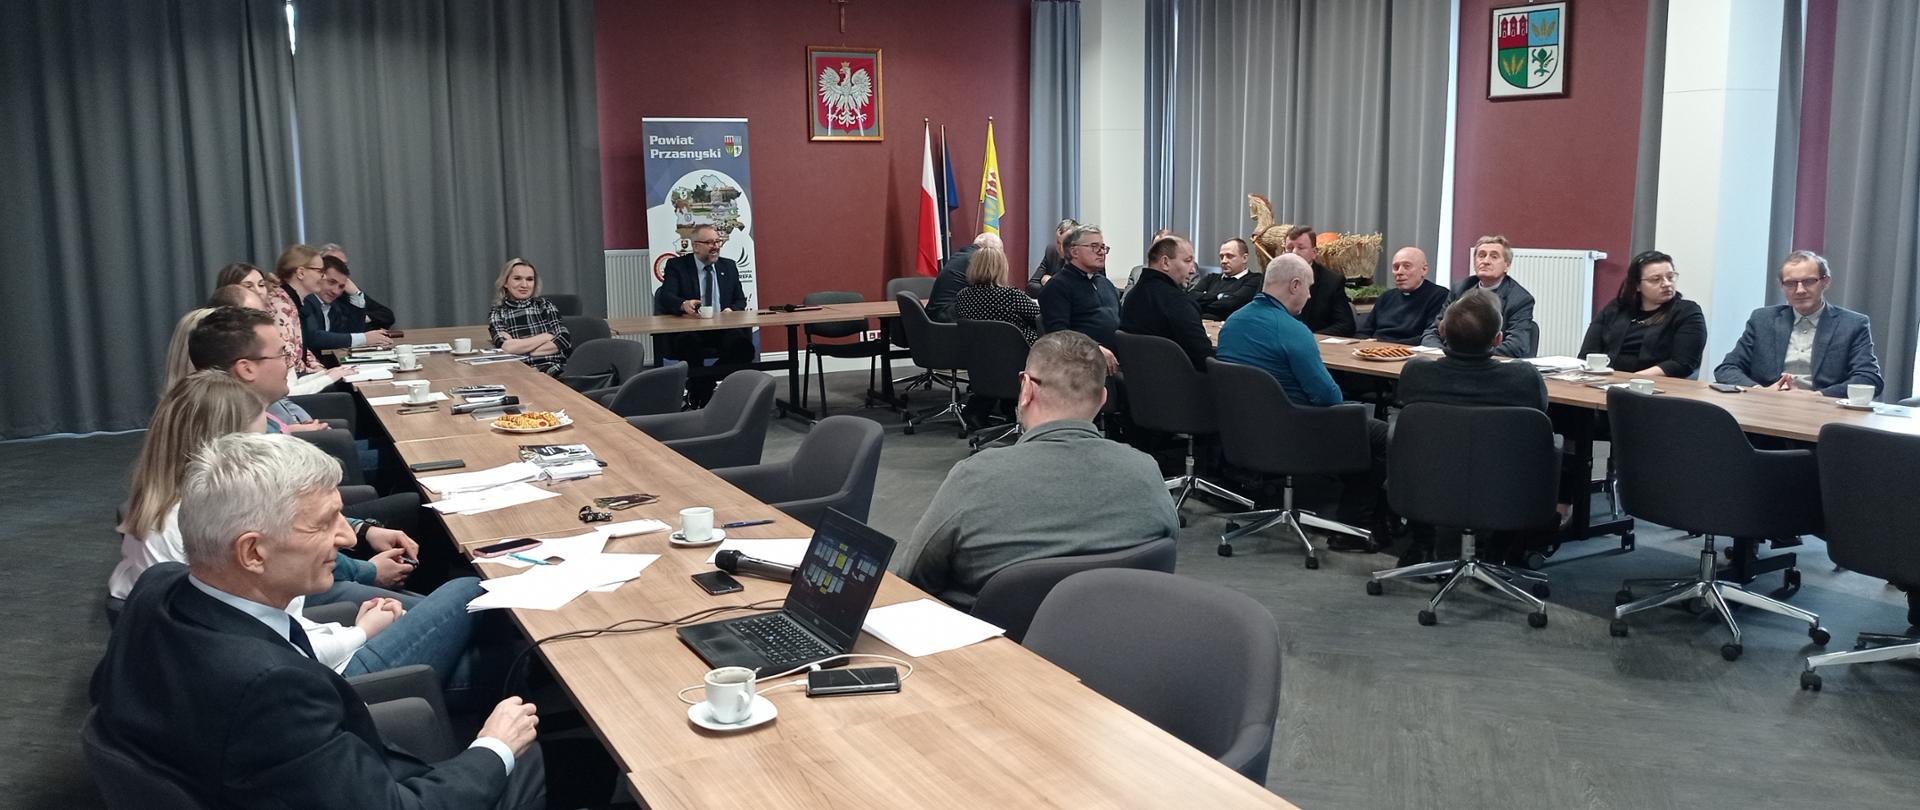 Na zdjęciu uczestnicy spotkania dotyczącego Rządowego Programu Odbudowy Zabytków, sala konferencyjna Starostwa Powiatowego w Przasnyszu.